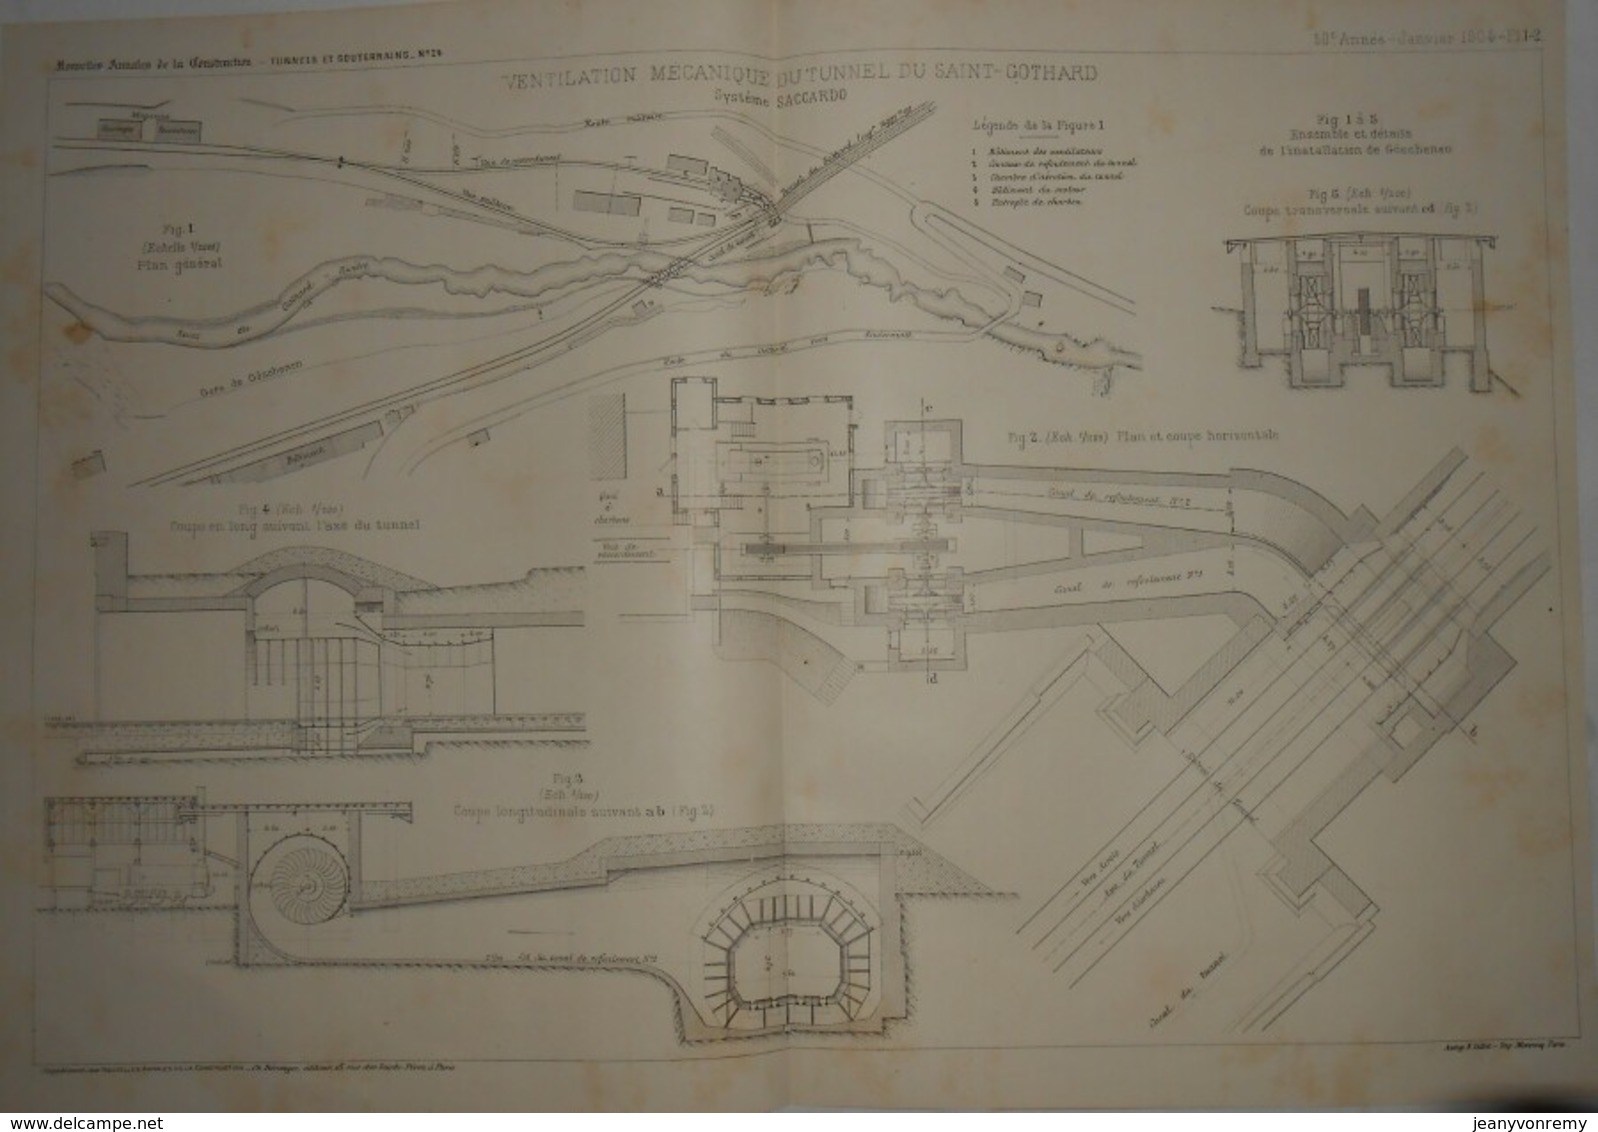 Plan De La Ventilation Mécanique Du Tunnel Du Saint-Gothard. Système Saccardo. 1904 - Travaux Publics